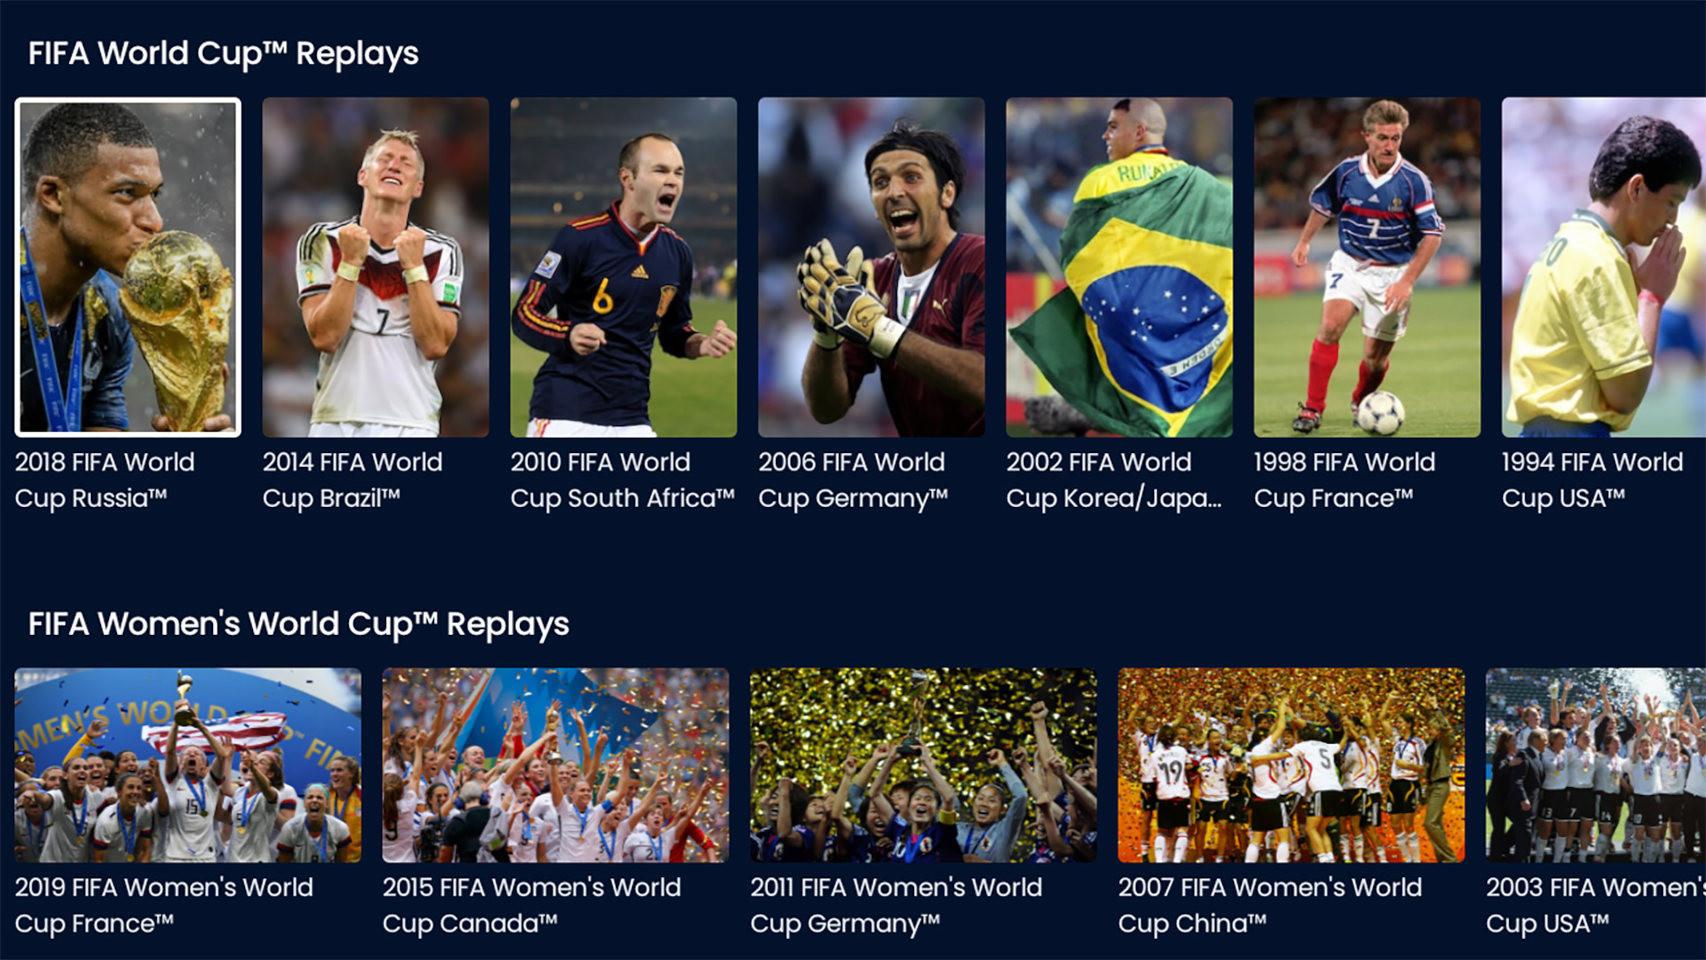 La app oficial de la FIFA